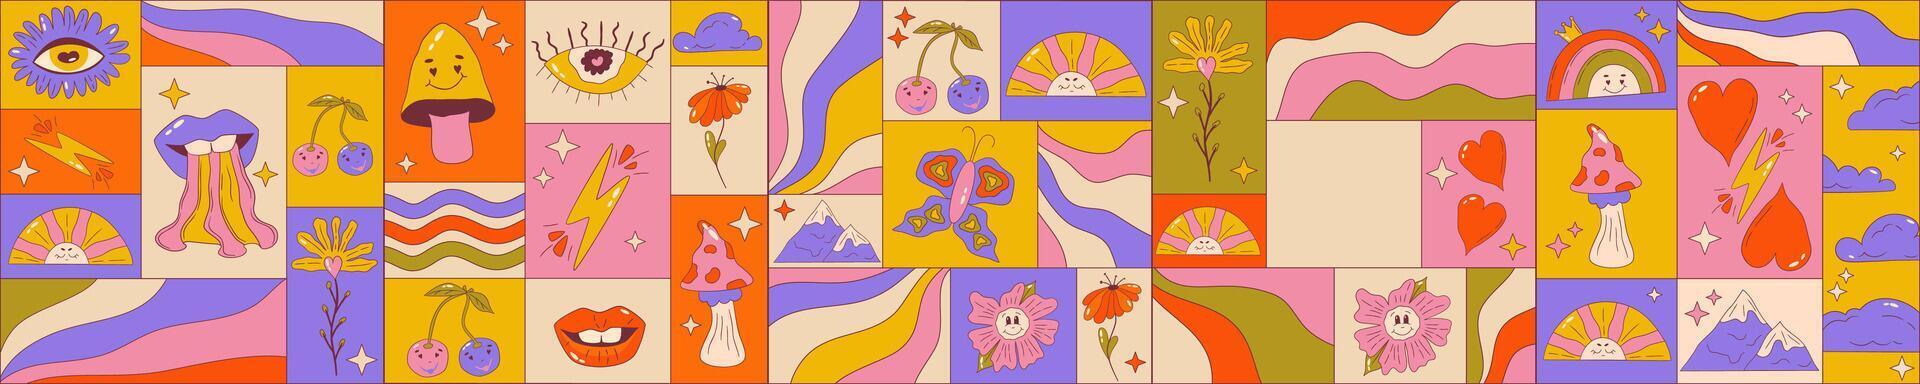 trippy grafisch poster reeks met retro groovy elementen. poster plein met lippen, bloem, kers en Golf. trippy groovy jaren 70 grafisch. tekenfilm vector illutration